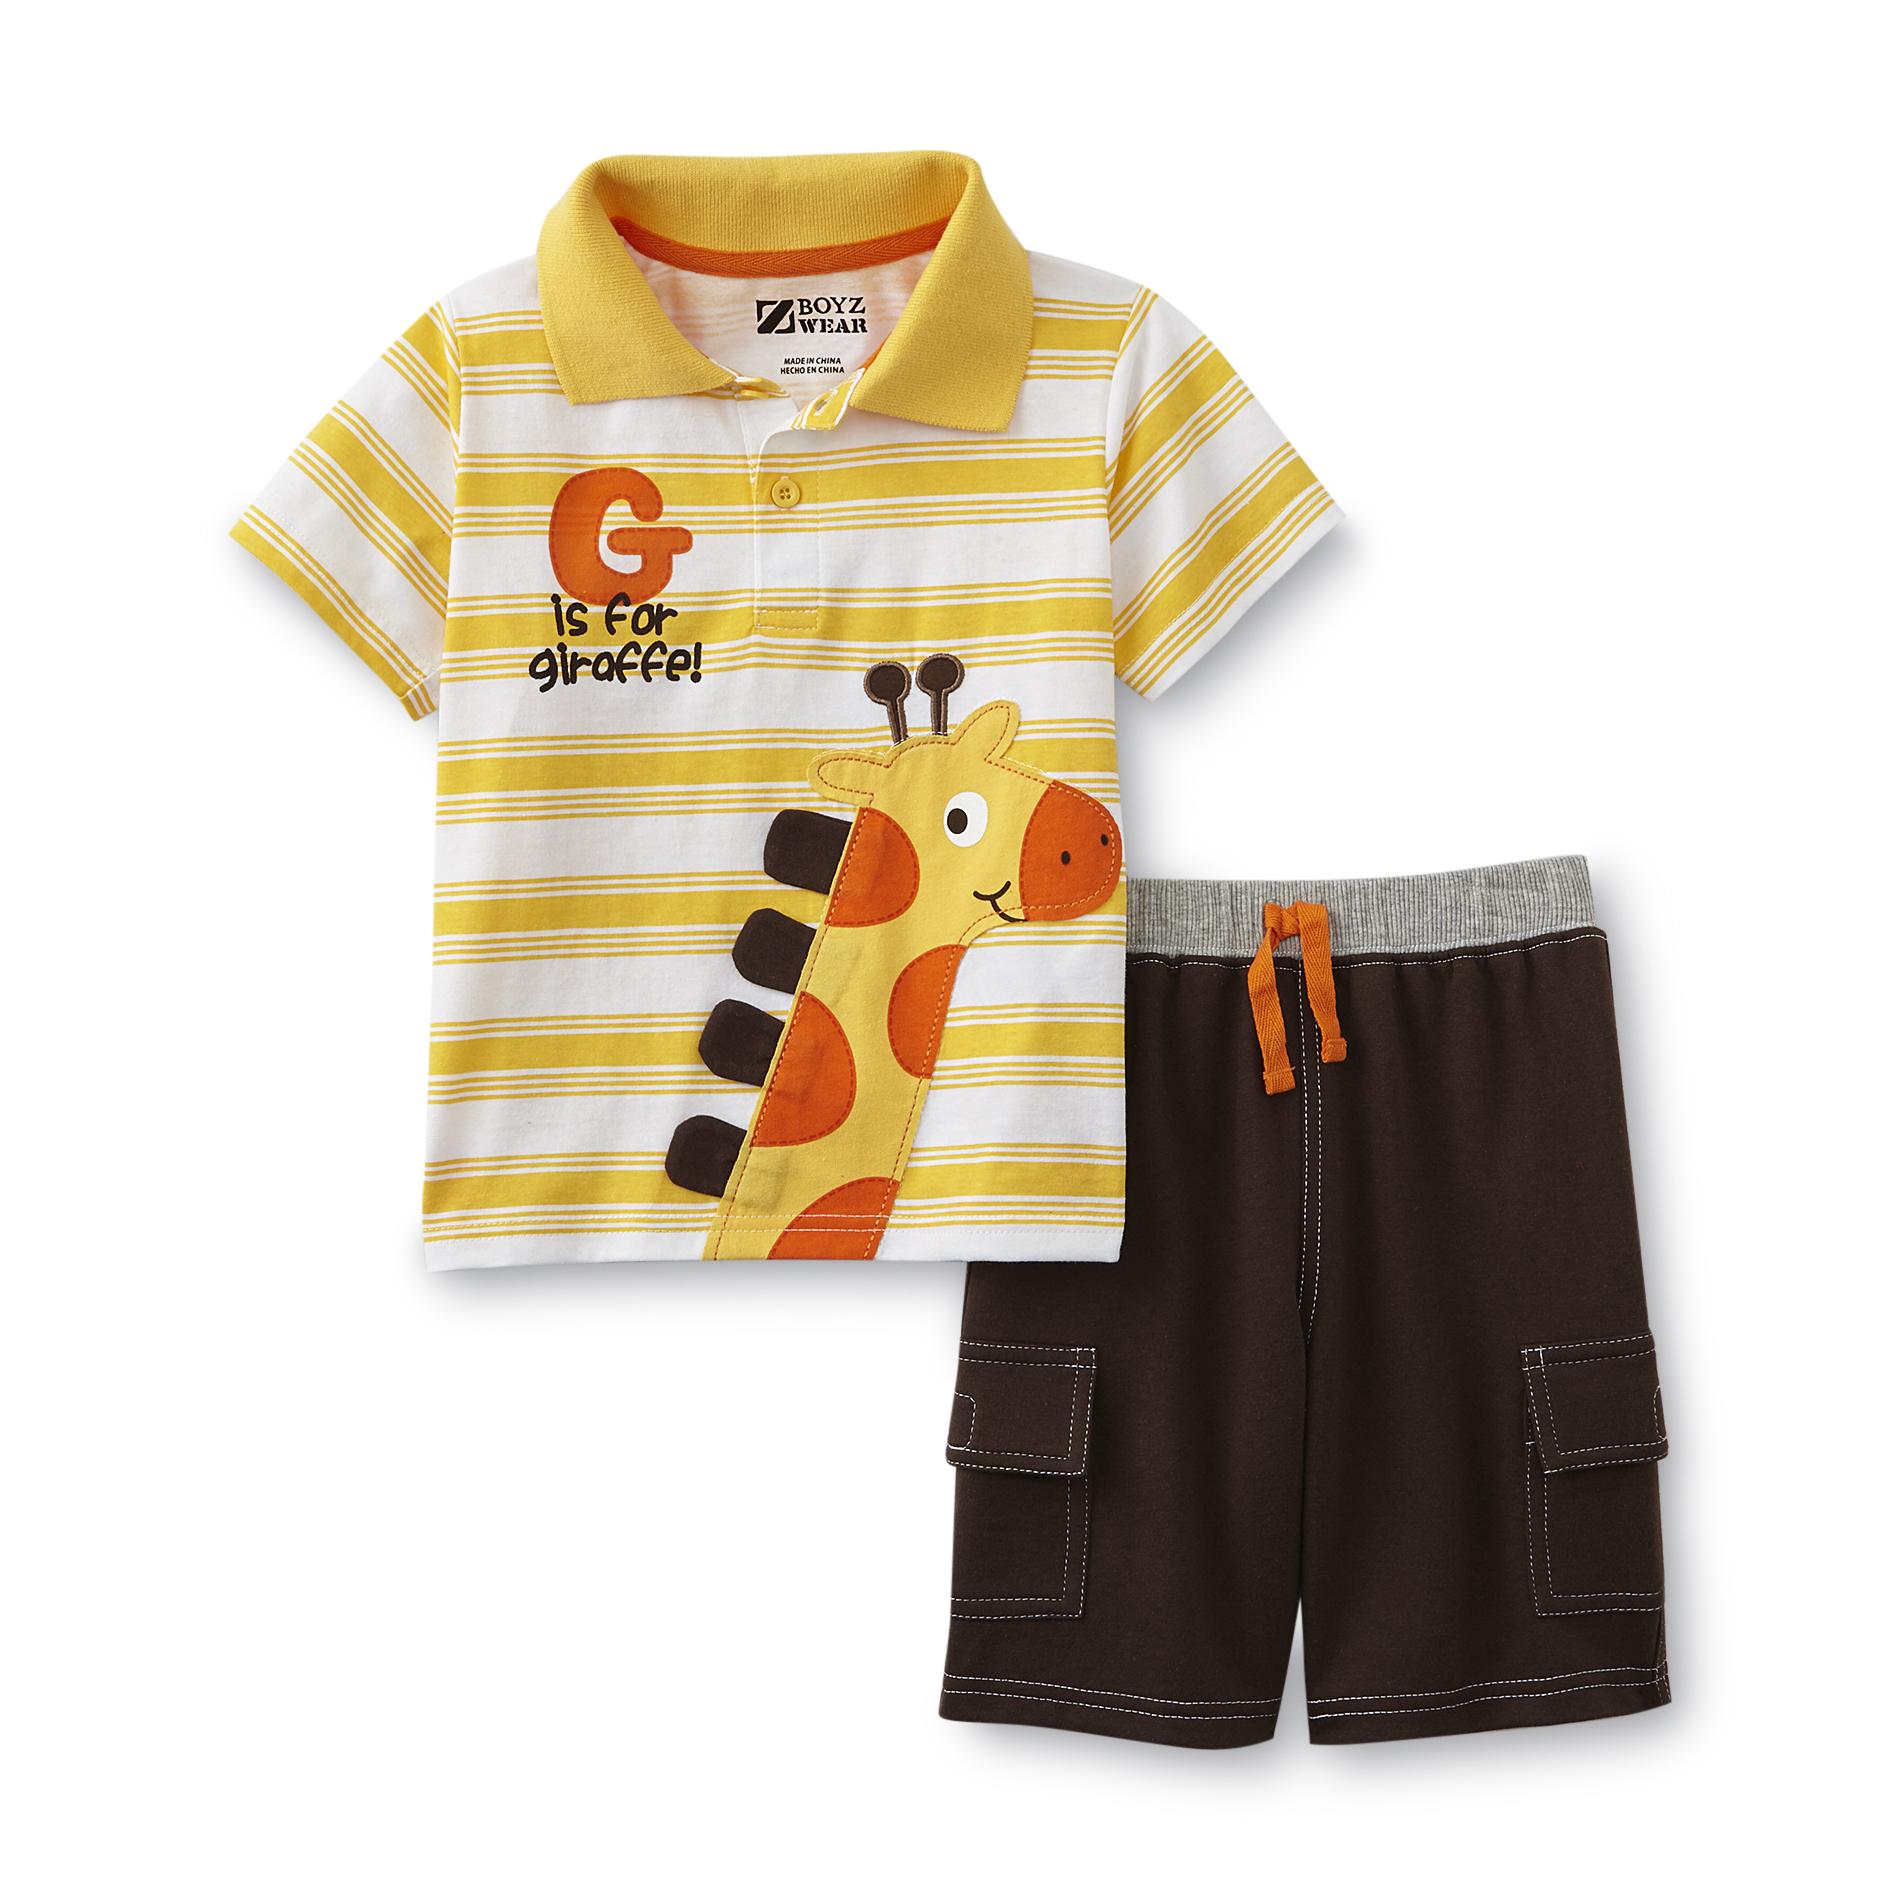 Boyz Wear Infant & Toddler Boy's Polo Shirt & Shorts - Striped